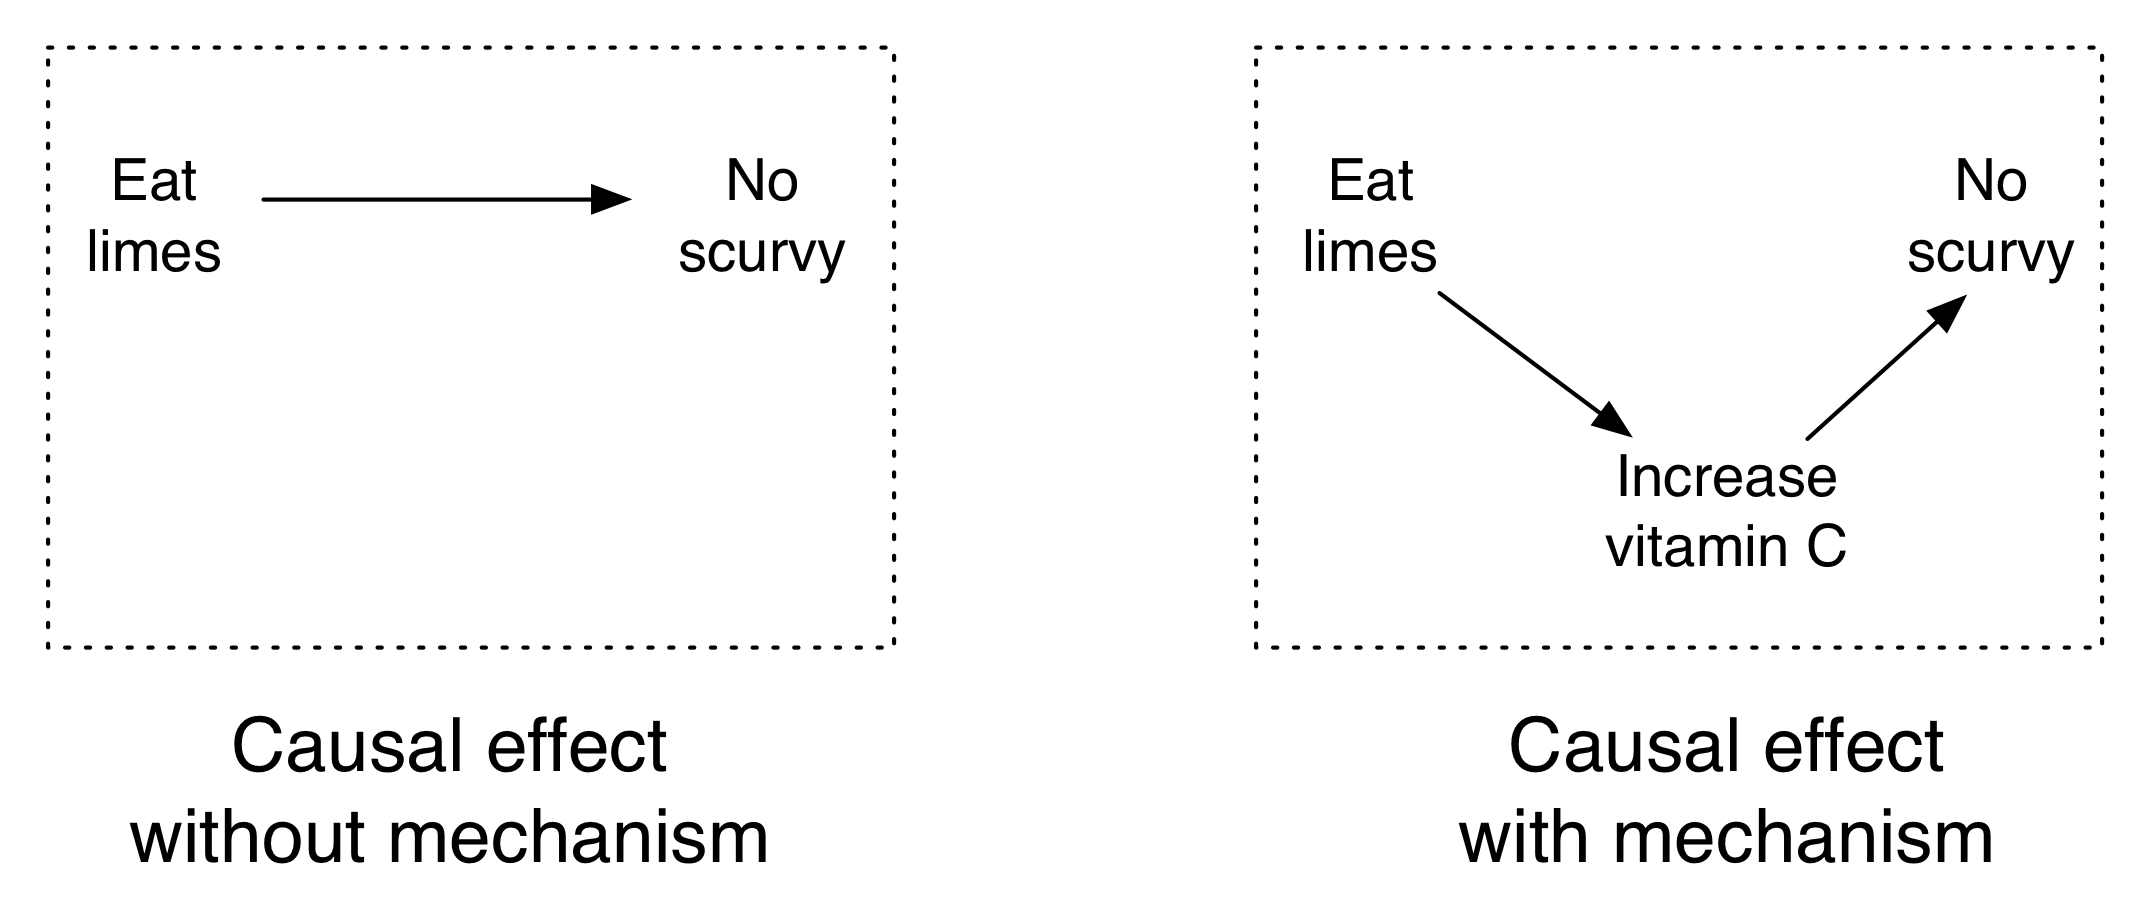 Figur 4.10: Limer förhindrar skørbuk och mekanismen är vitamin C.